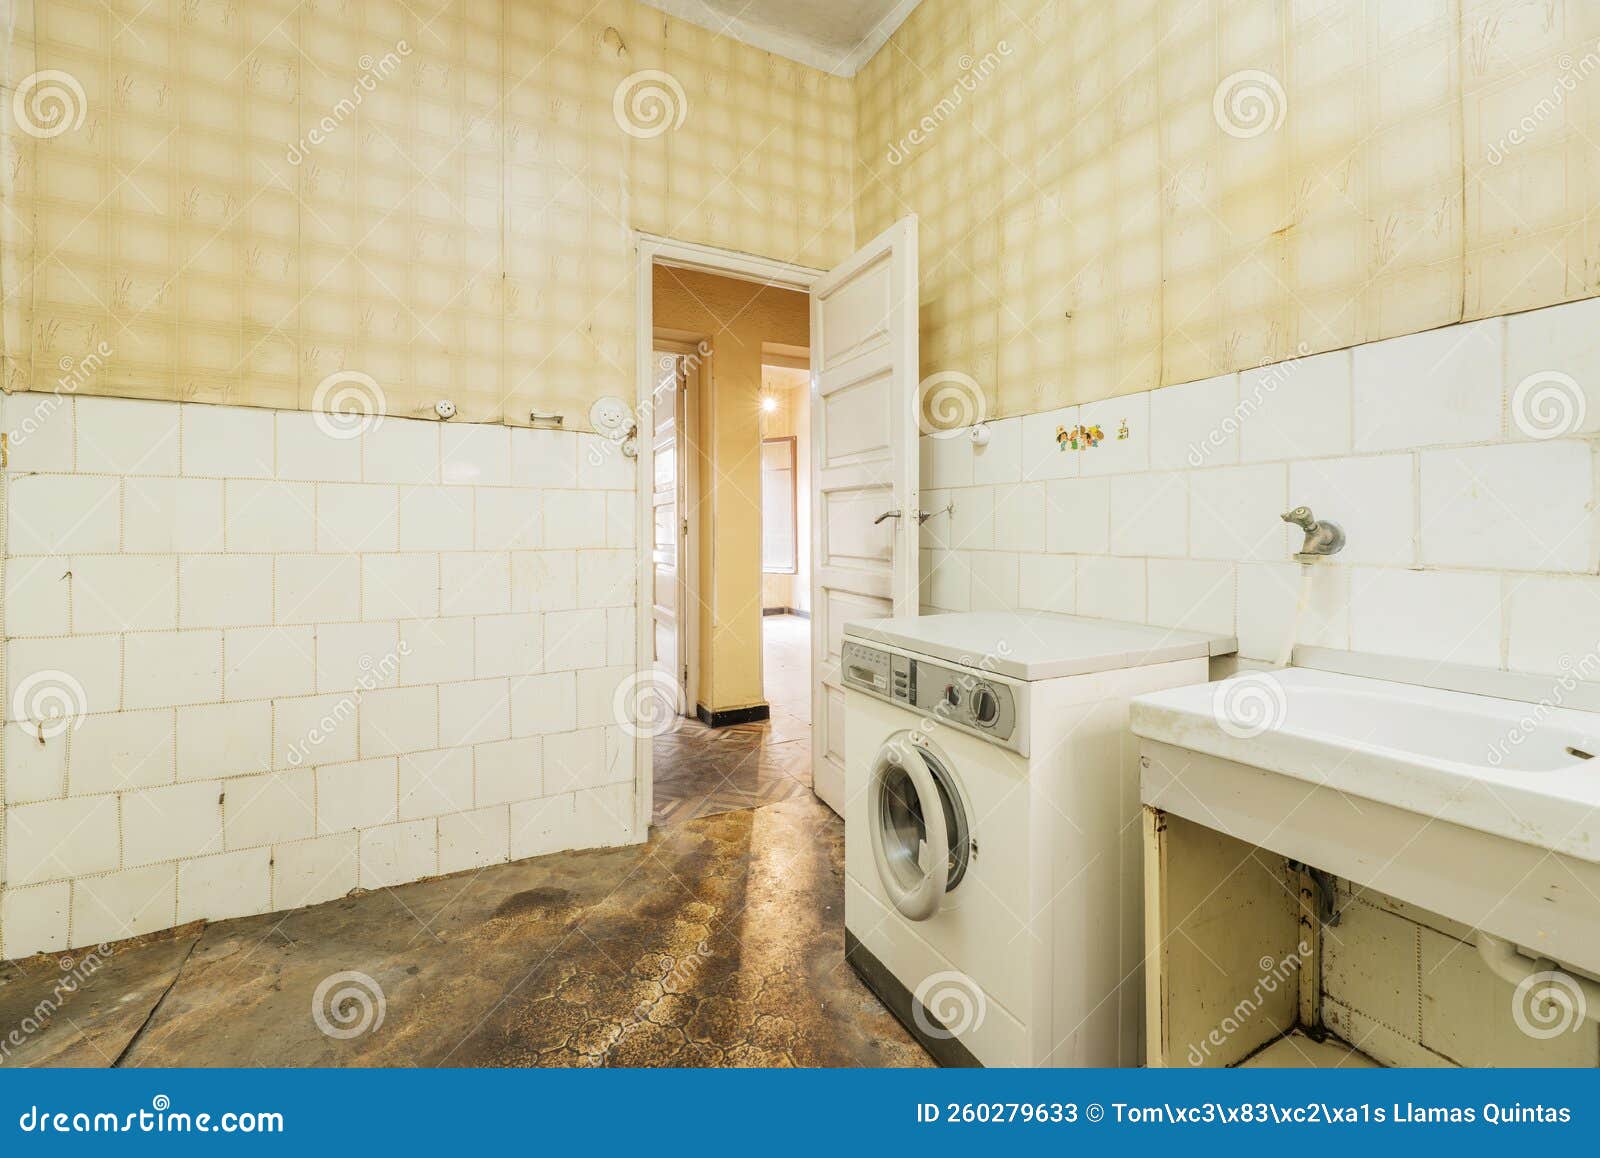 cocina vieja, sucia y destartalada con suelo oscuro, azulejos blancos y papel amarillo en las paredes